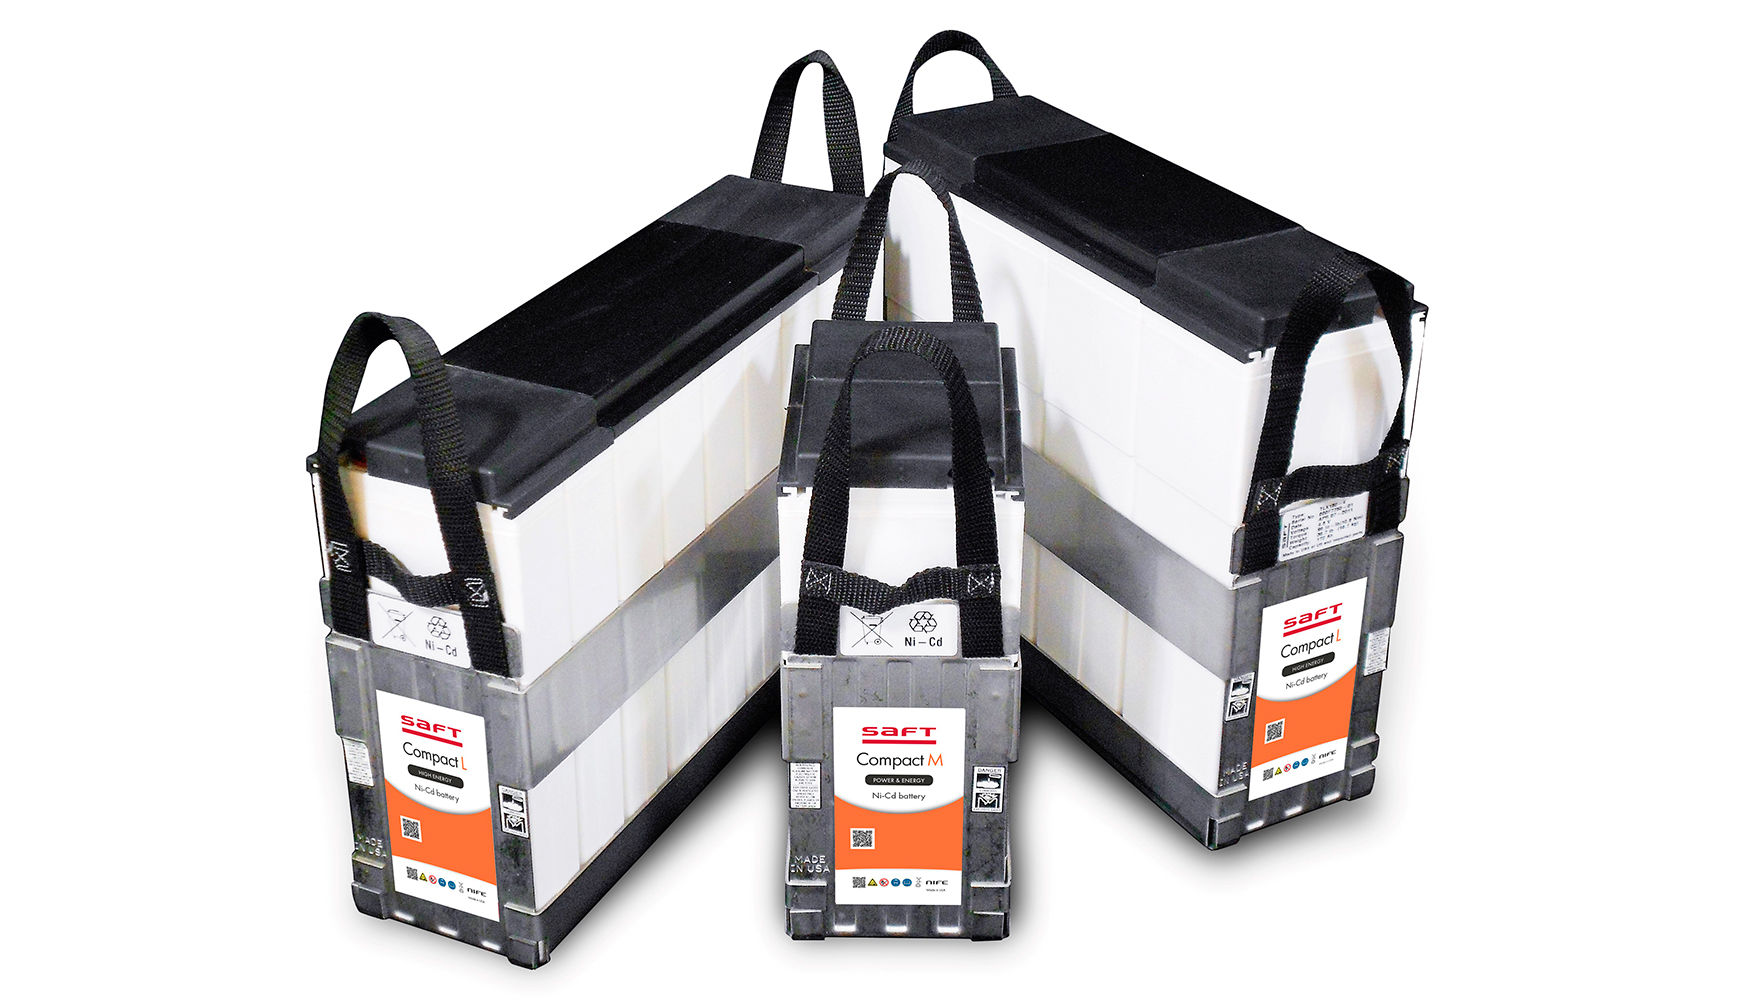 La nueva gama de bateras de respaldo de nquel est diseada para alimentar sistemas crticos en instalaciones industriales remotas y de difcil...